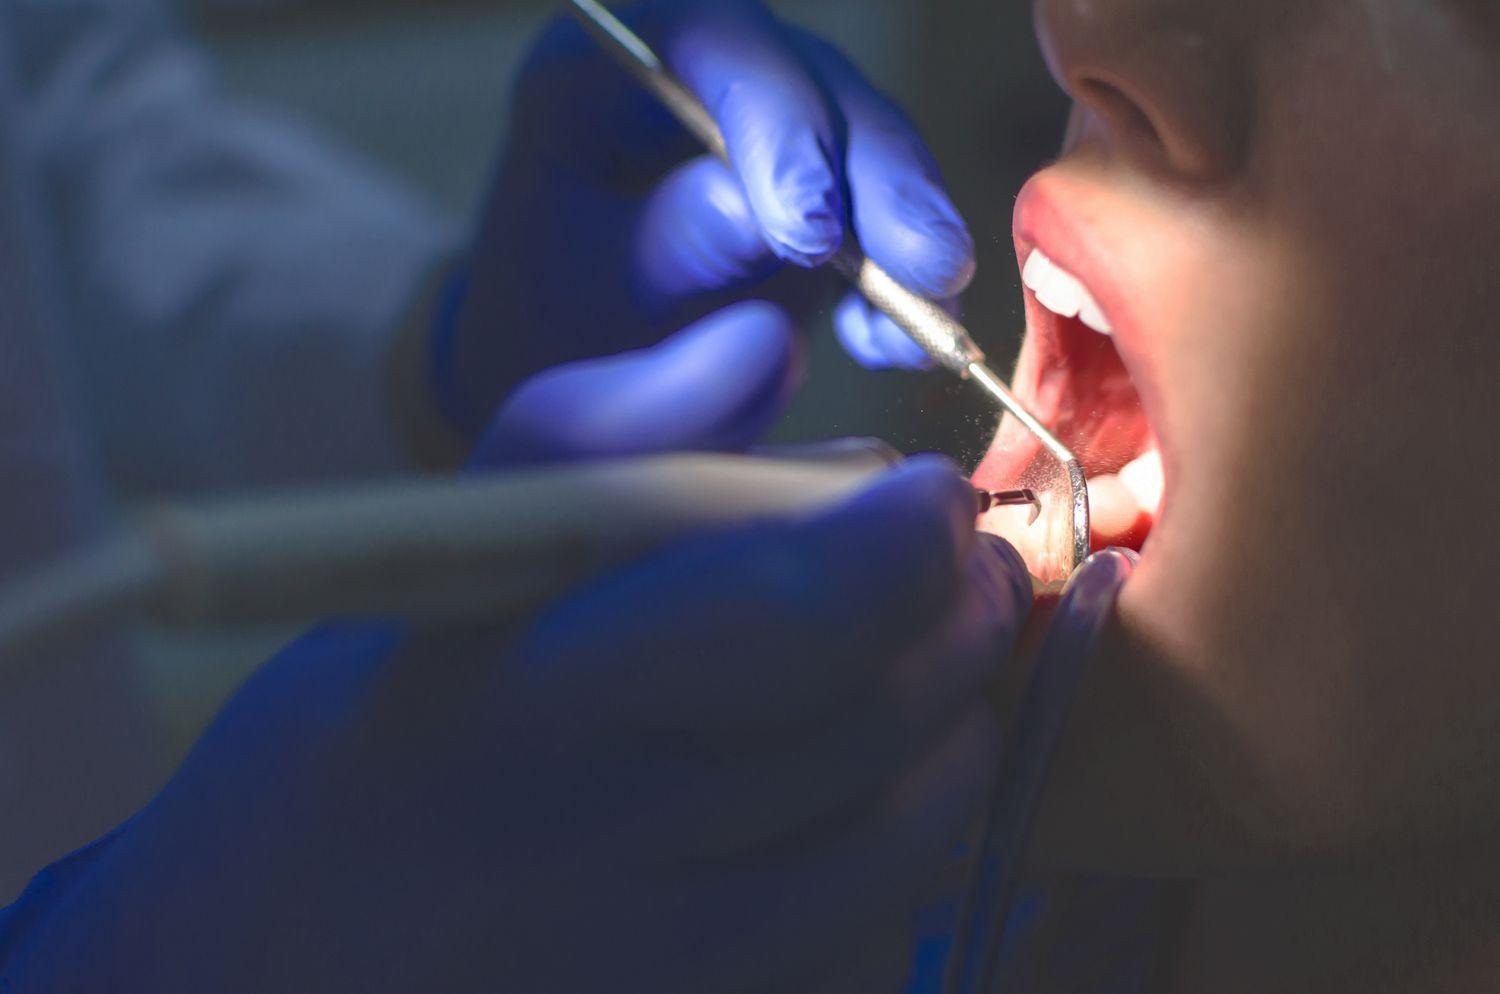 higiena i profilaktyka jamy ustnej